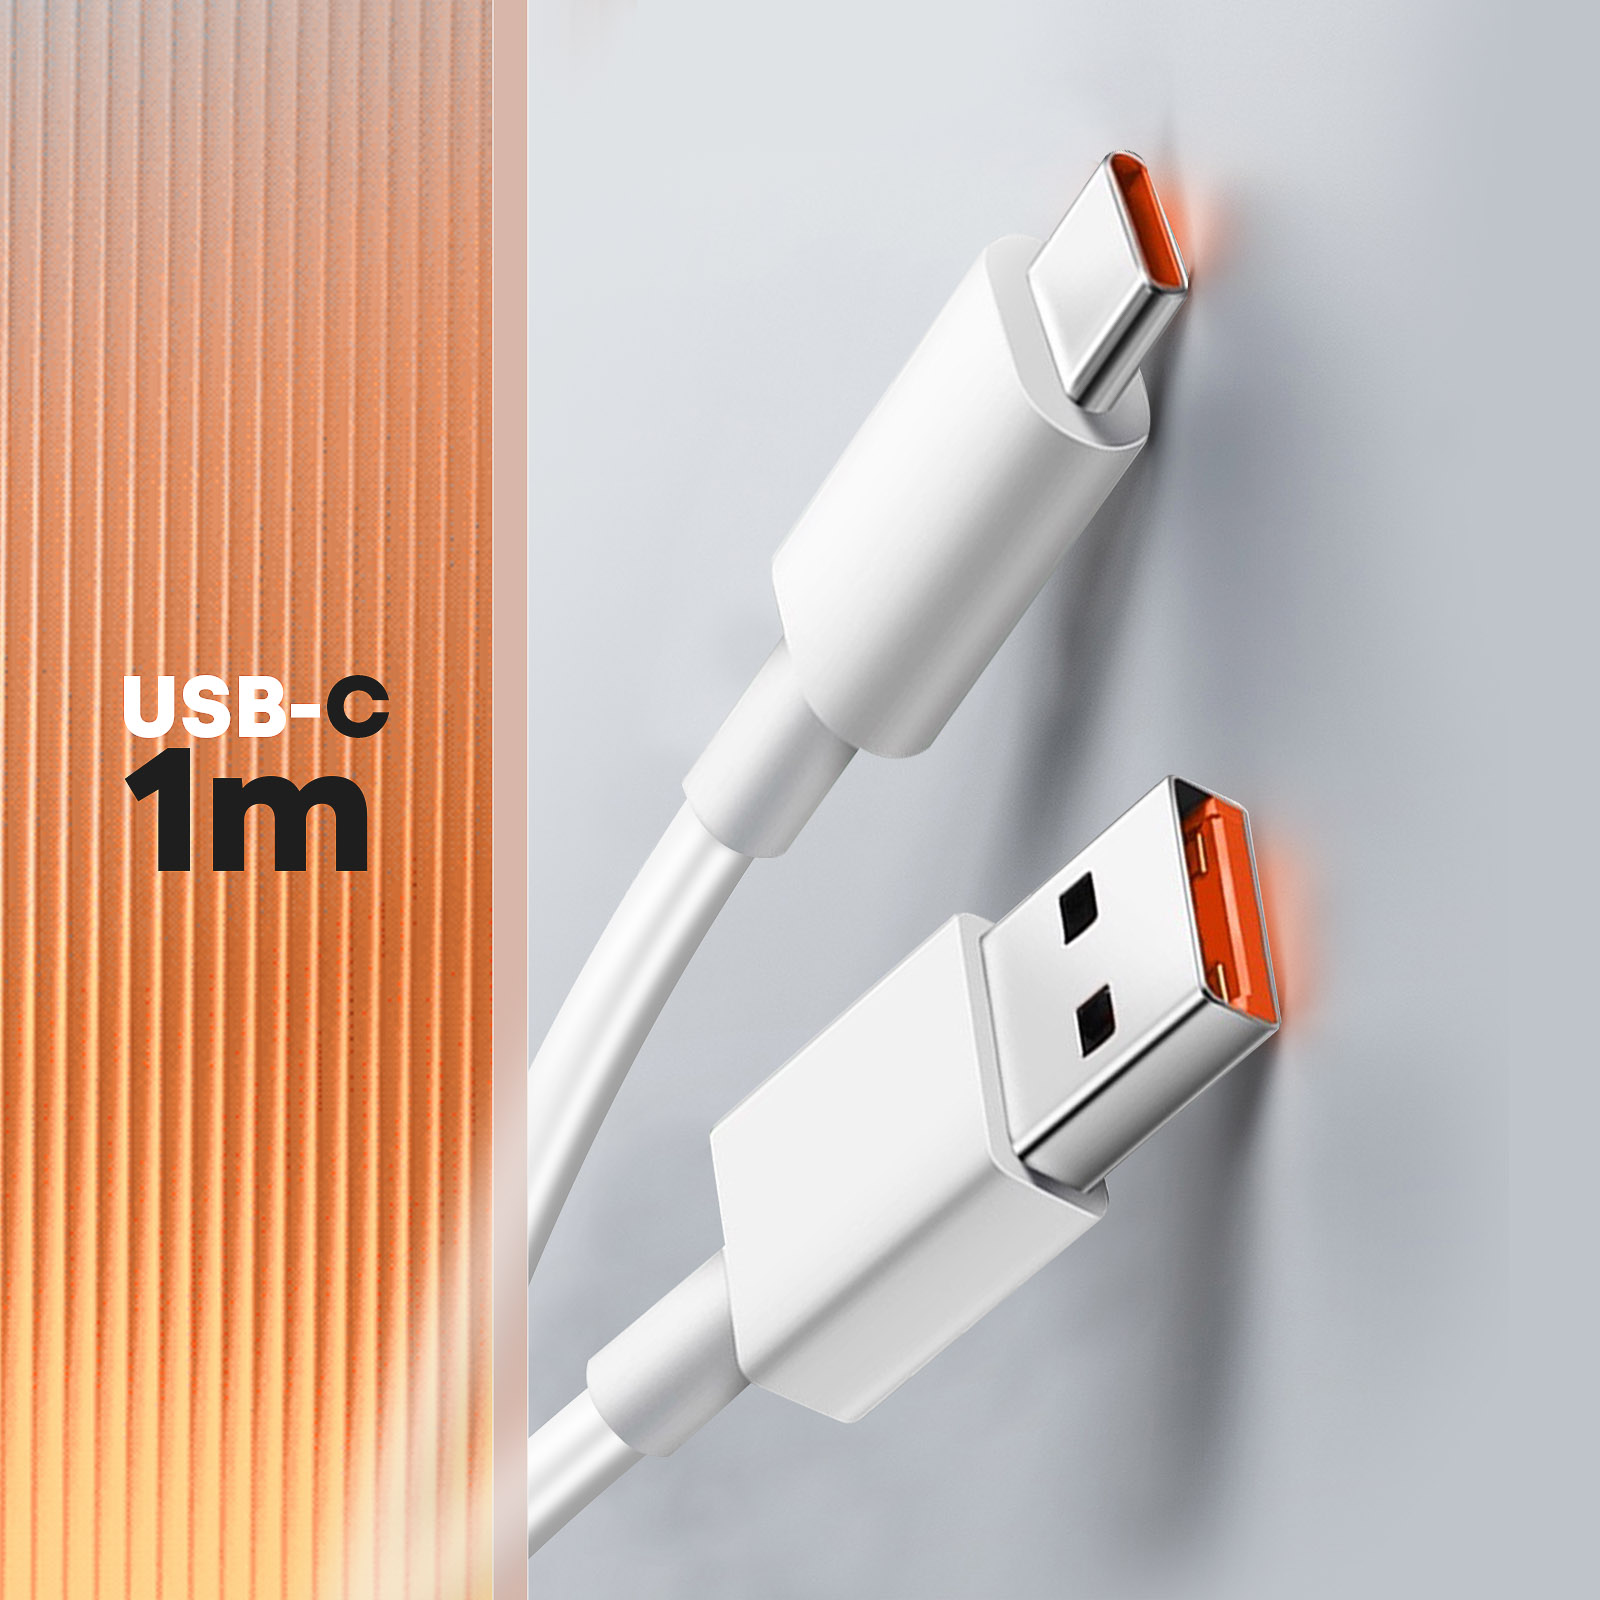 Câble USB Type-C 120W pour recharge rapide et transfert de données, cordon  de chargeur pour